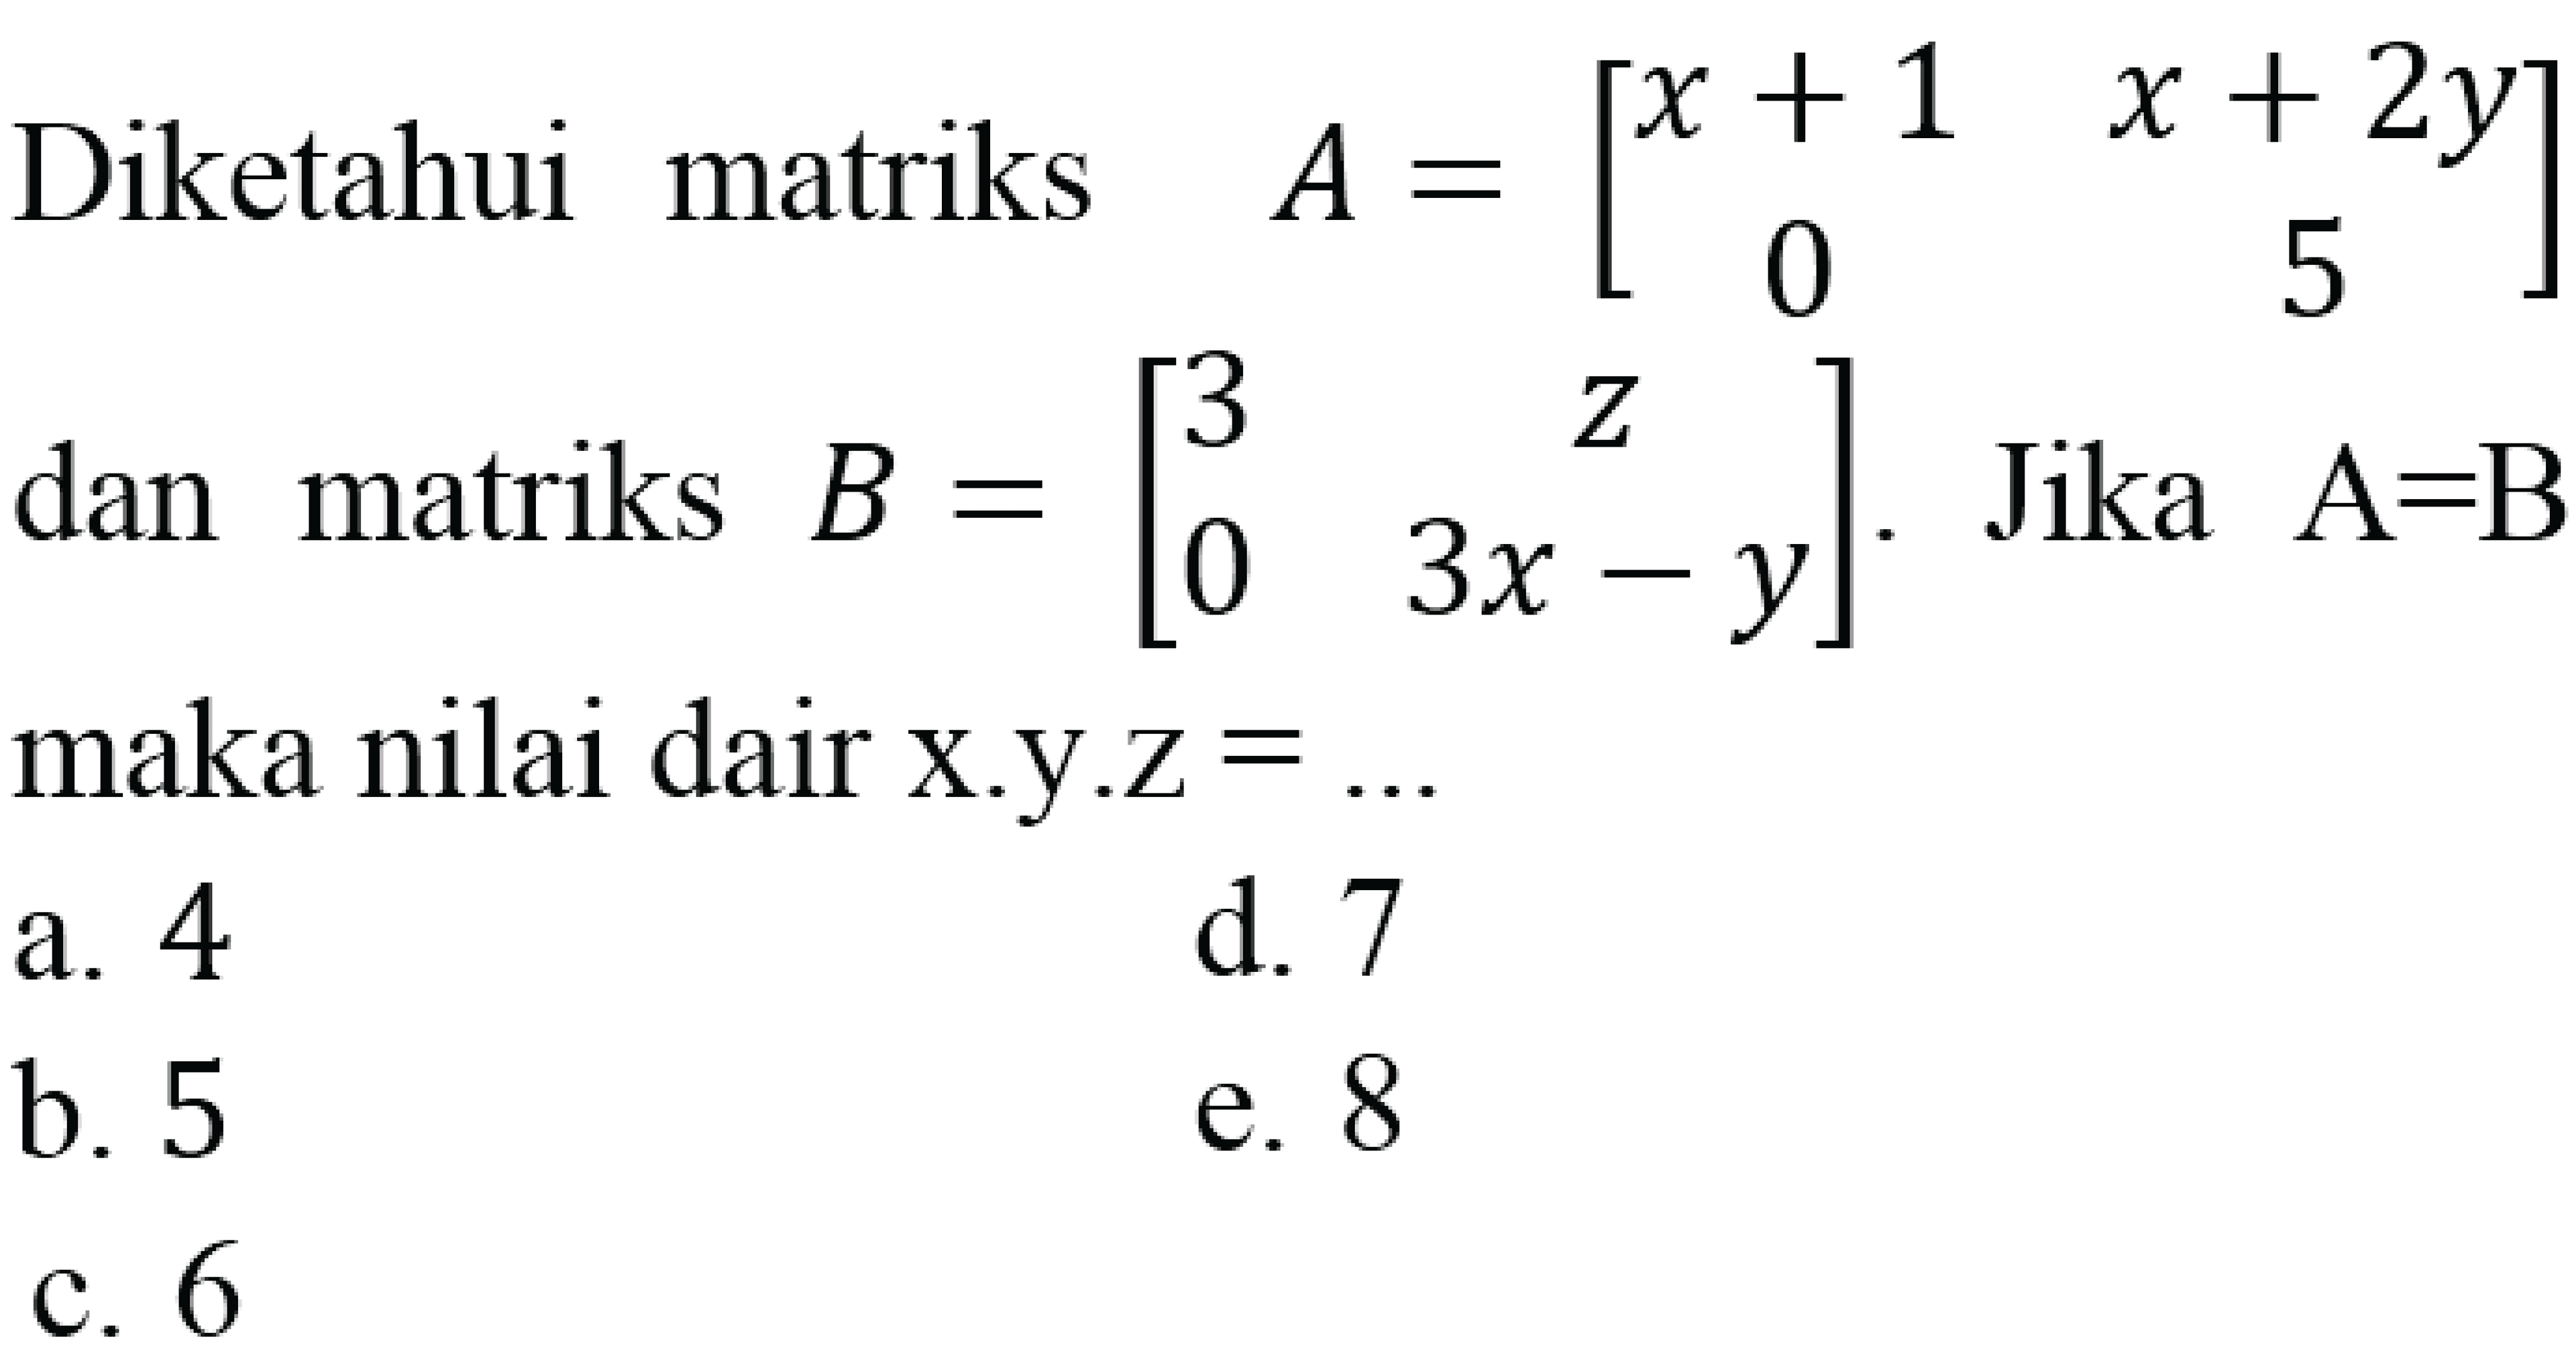 Diketahui matriks  A=[x+1 x+2y 0 5]  dan matriks  B=[3 z 0 3x-y] . Jika  A=B  maka nilai dair x.y.z  =... 